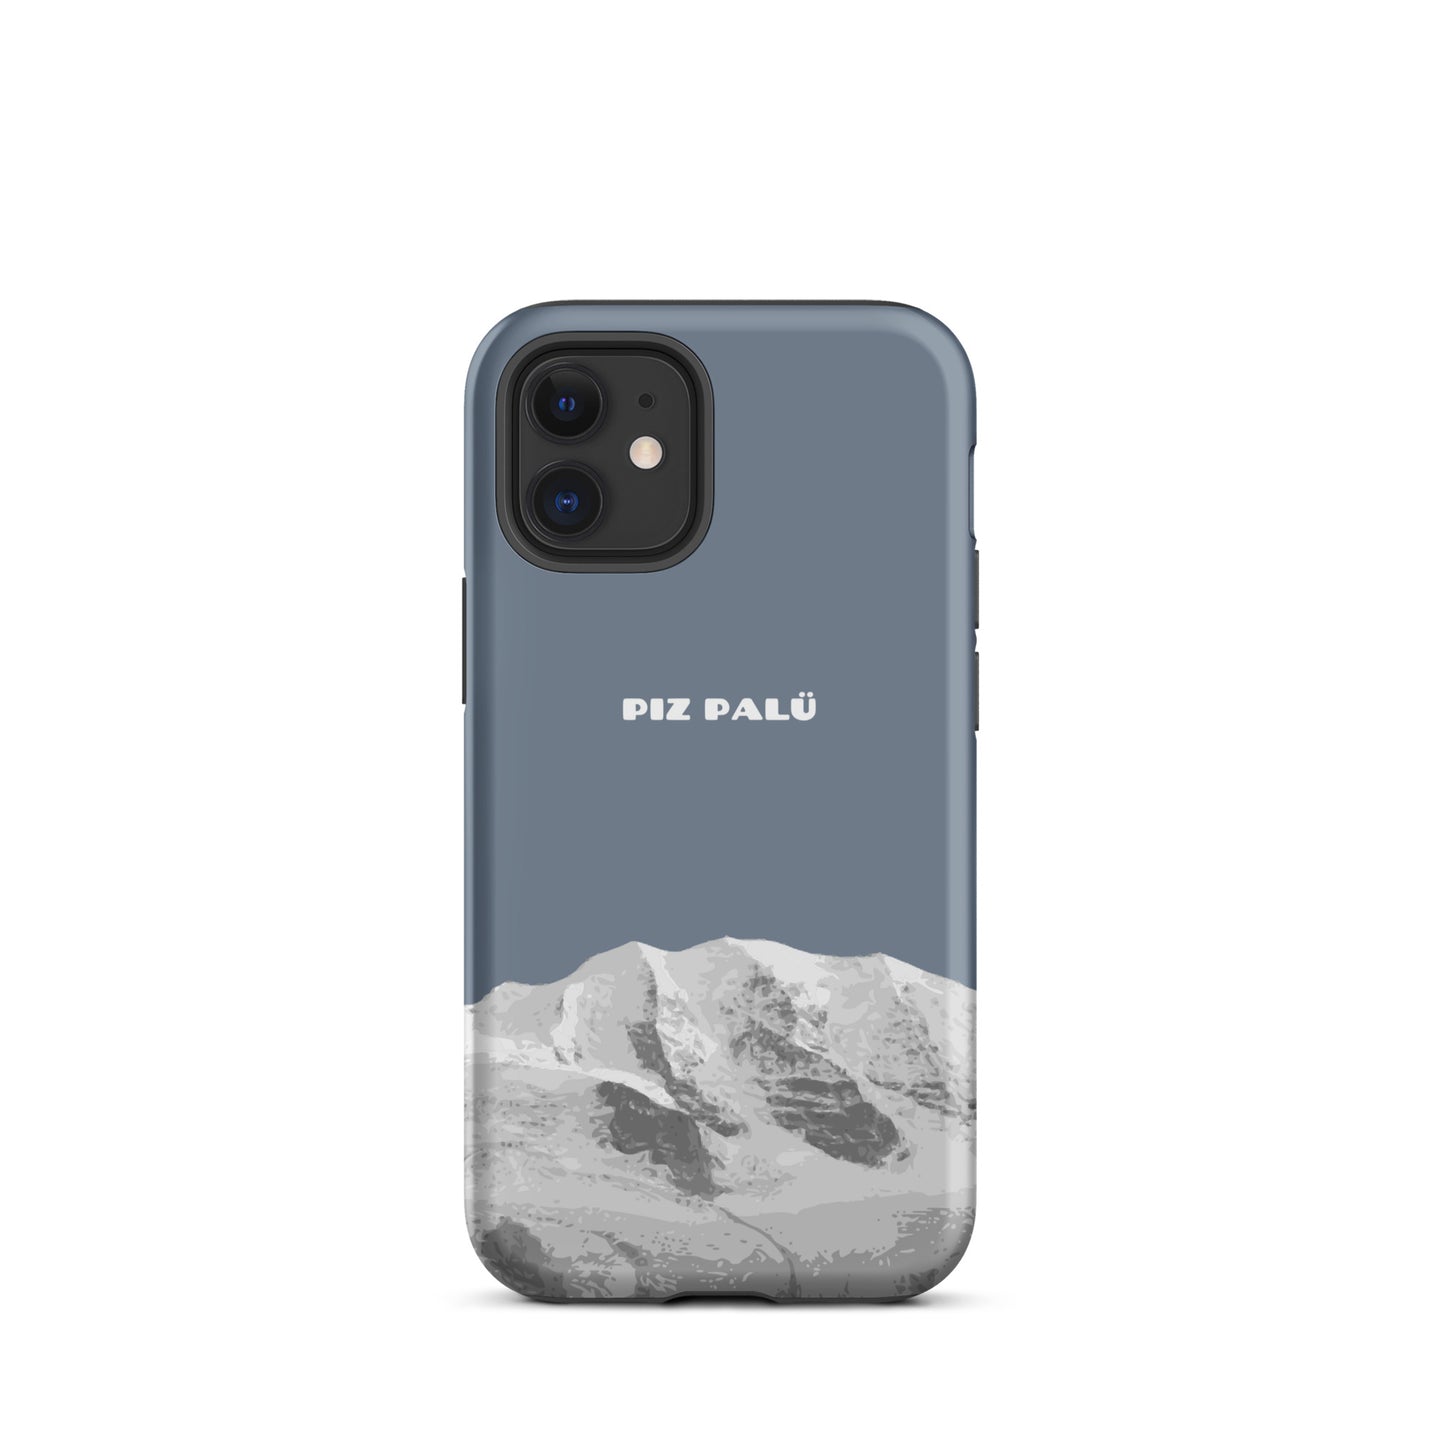 Hülle für das iPhone 12 Mini von Apple in der Farbe Schiefergrau, dass den Piz Palü in Graubünden zeigt.